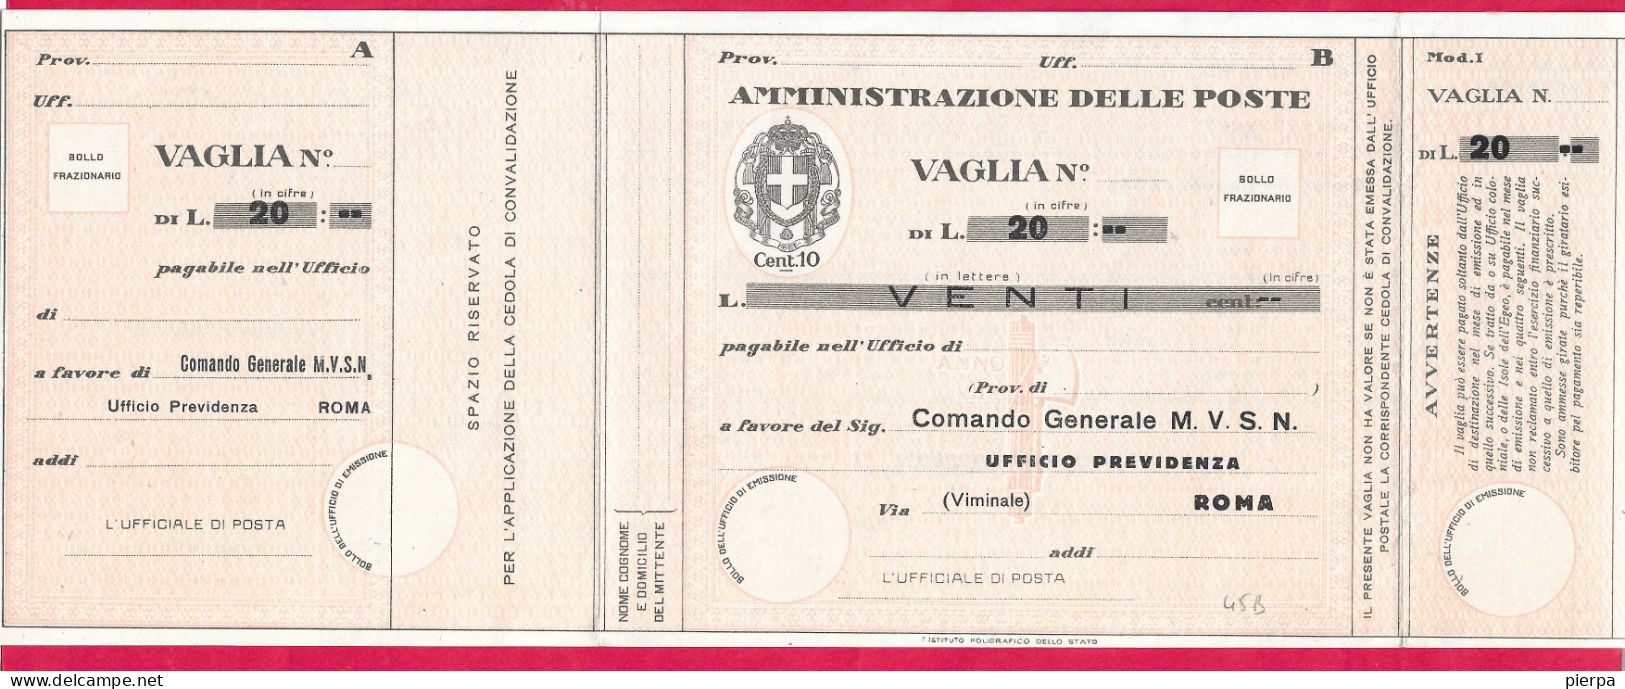 MODULO VAGLIA POSTALE C.10 (CAT. INT. 45/B) PRECOMPILATO M.V.S.N. LIRE 20 - NON VIAGGIATO - Vaglia Postale